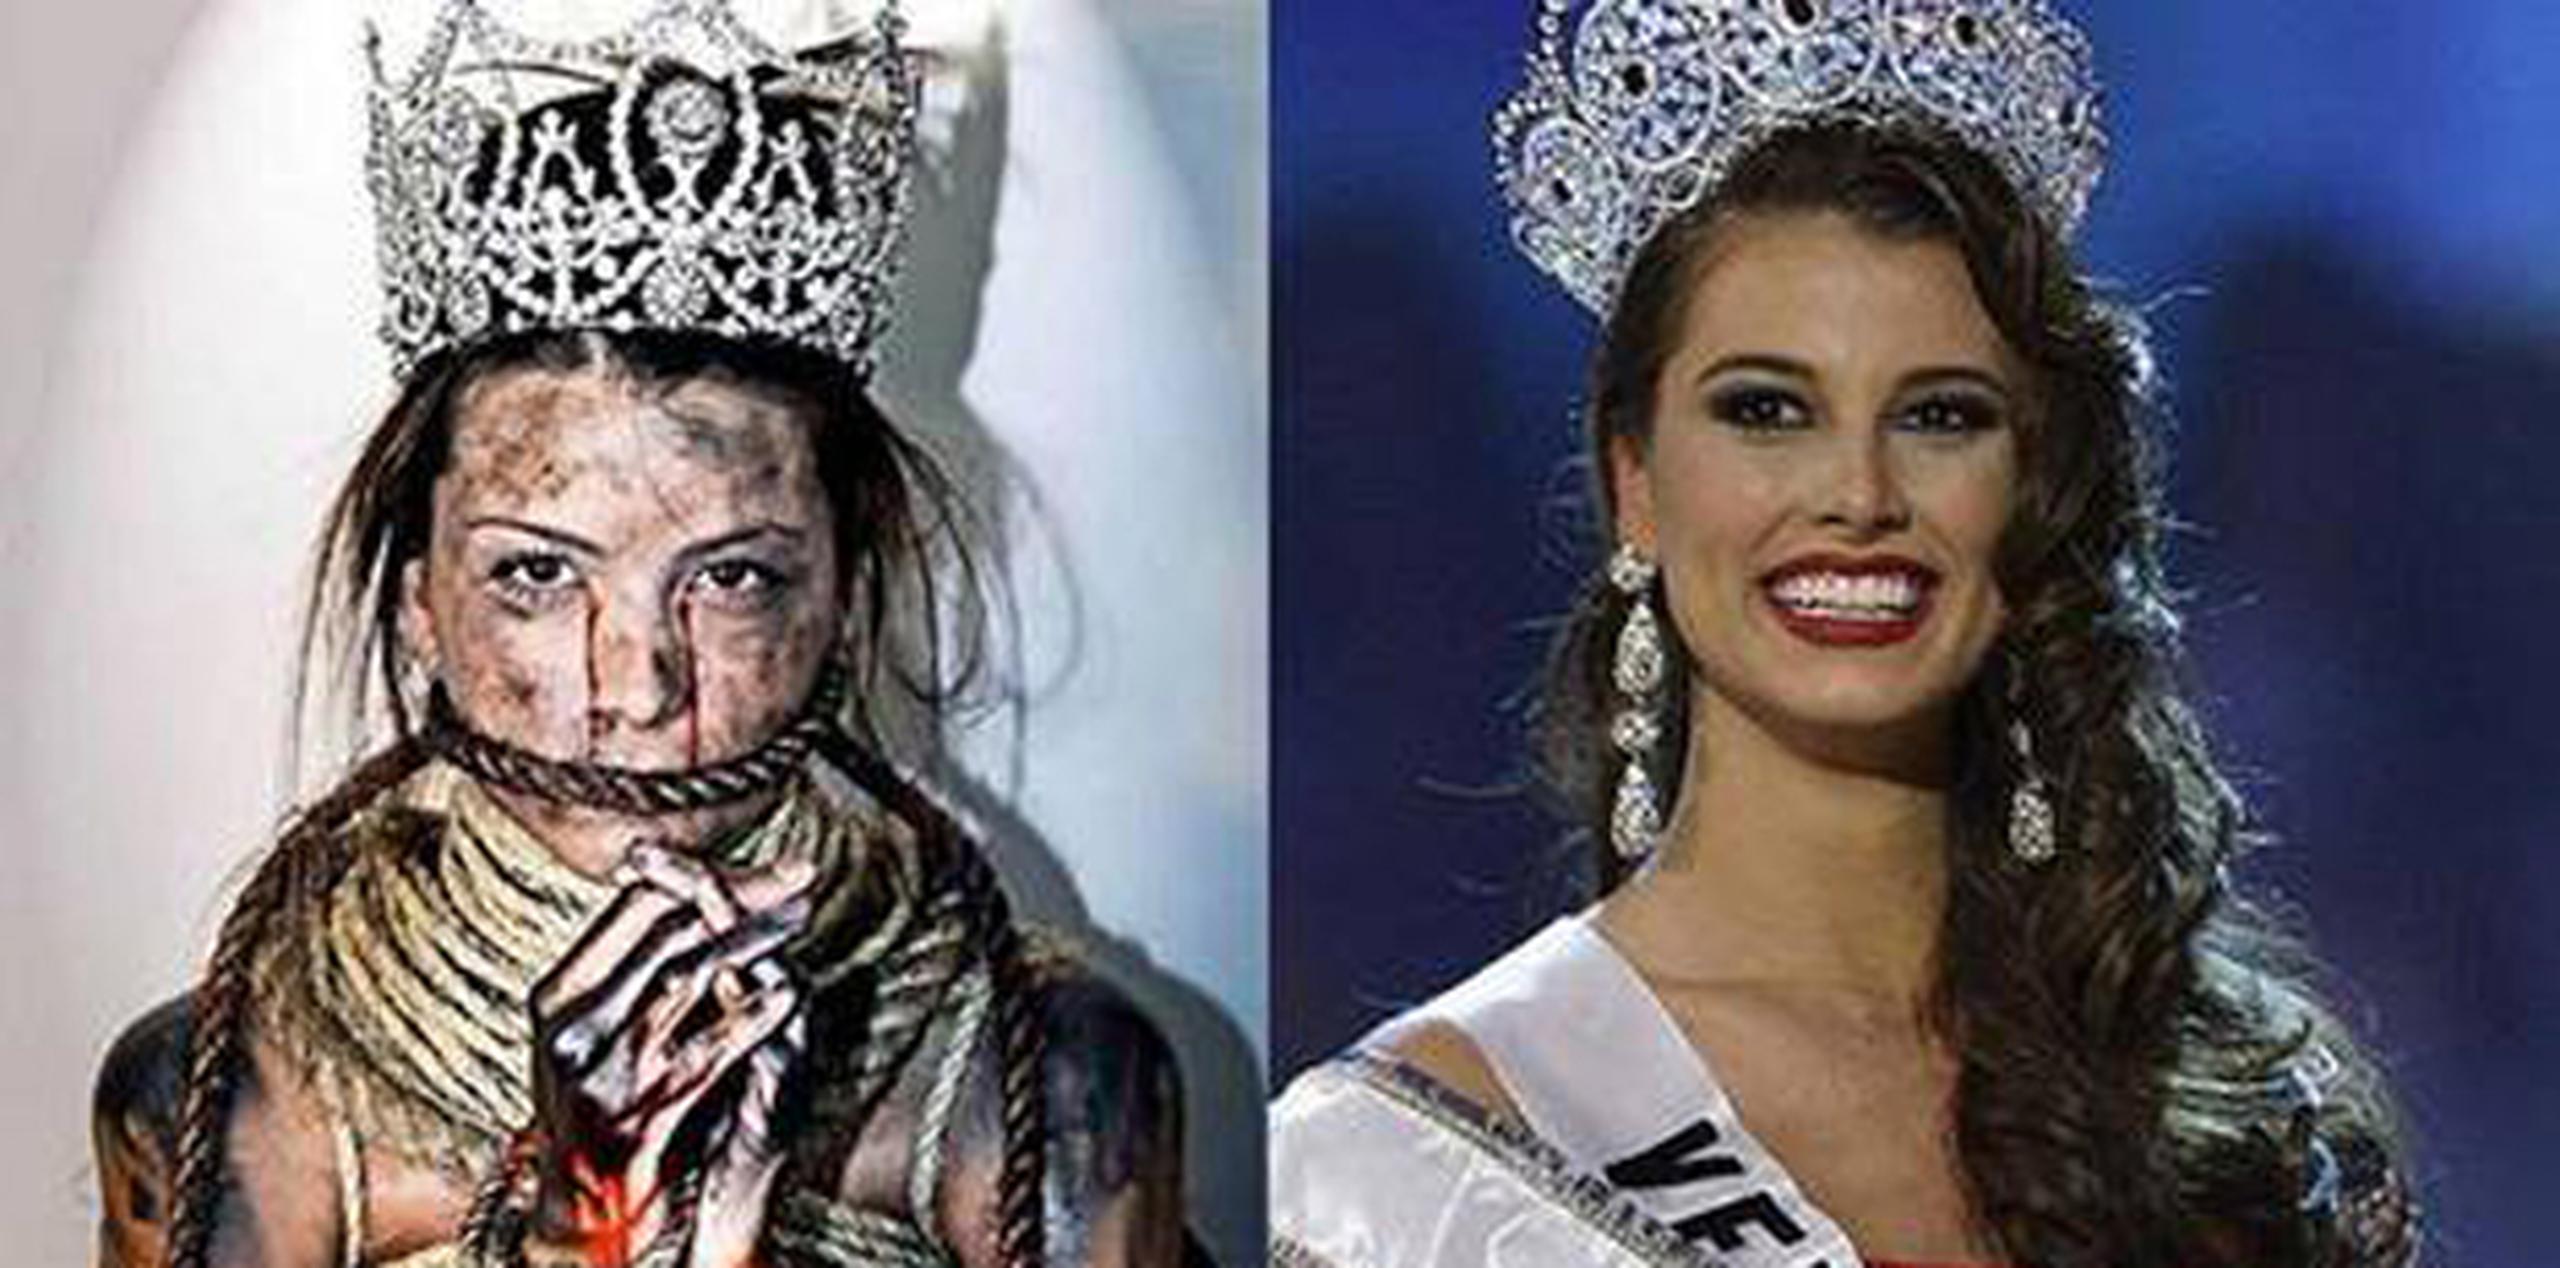 La Miss Universo 2009 posó para el lente del fotógrafo Daniel Bracci como parte de la campaña “Tu voz es tu poder”. (Archivo)